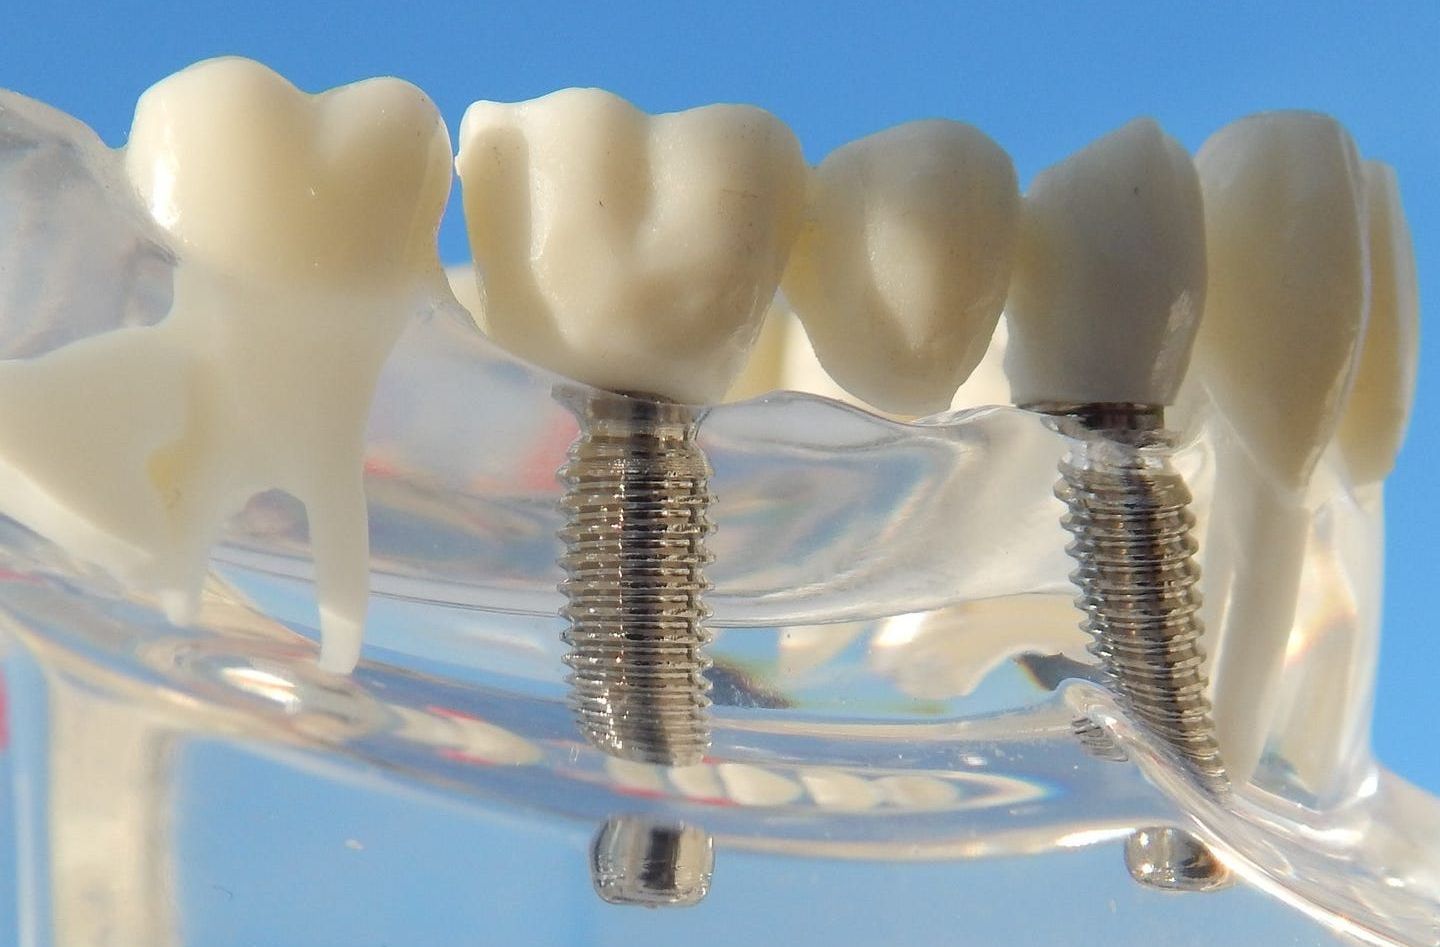 Fehlende Zähne können heute durch moderne Implantatversorgungen ersetzt werden. Das Implantat stell eine künstliche Zahnwurzel dar, die im Kieferknochen verankert und mit einem Zahnersatz versorgt wird. Manchmal zuvor ein Knochenaufbau notwendig.Der Ersatz durch Implantate bietet viele Vorteile.Oft kann durch den Einsatz von Implantaten ein abnehmbarer Ersatz vermieden und somit eine komfortabler Lösung gefunden werden. Beim Ersatz von einzelnen Zähnen müssen die Nachbarzähne nicht mitbehandelt werden.In Kombination mit abnehmbaren Zahnersatz kann dieser wesentlich graziler gestaltet werden und zu einer Verbesserung des Halts beitragen.